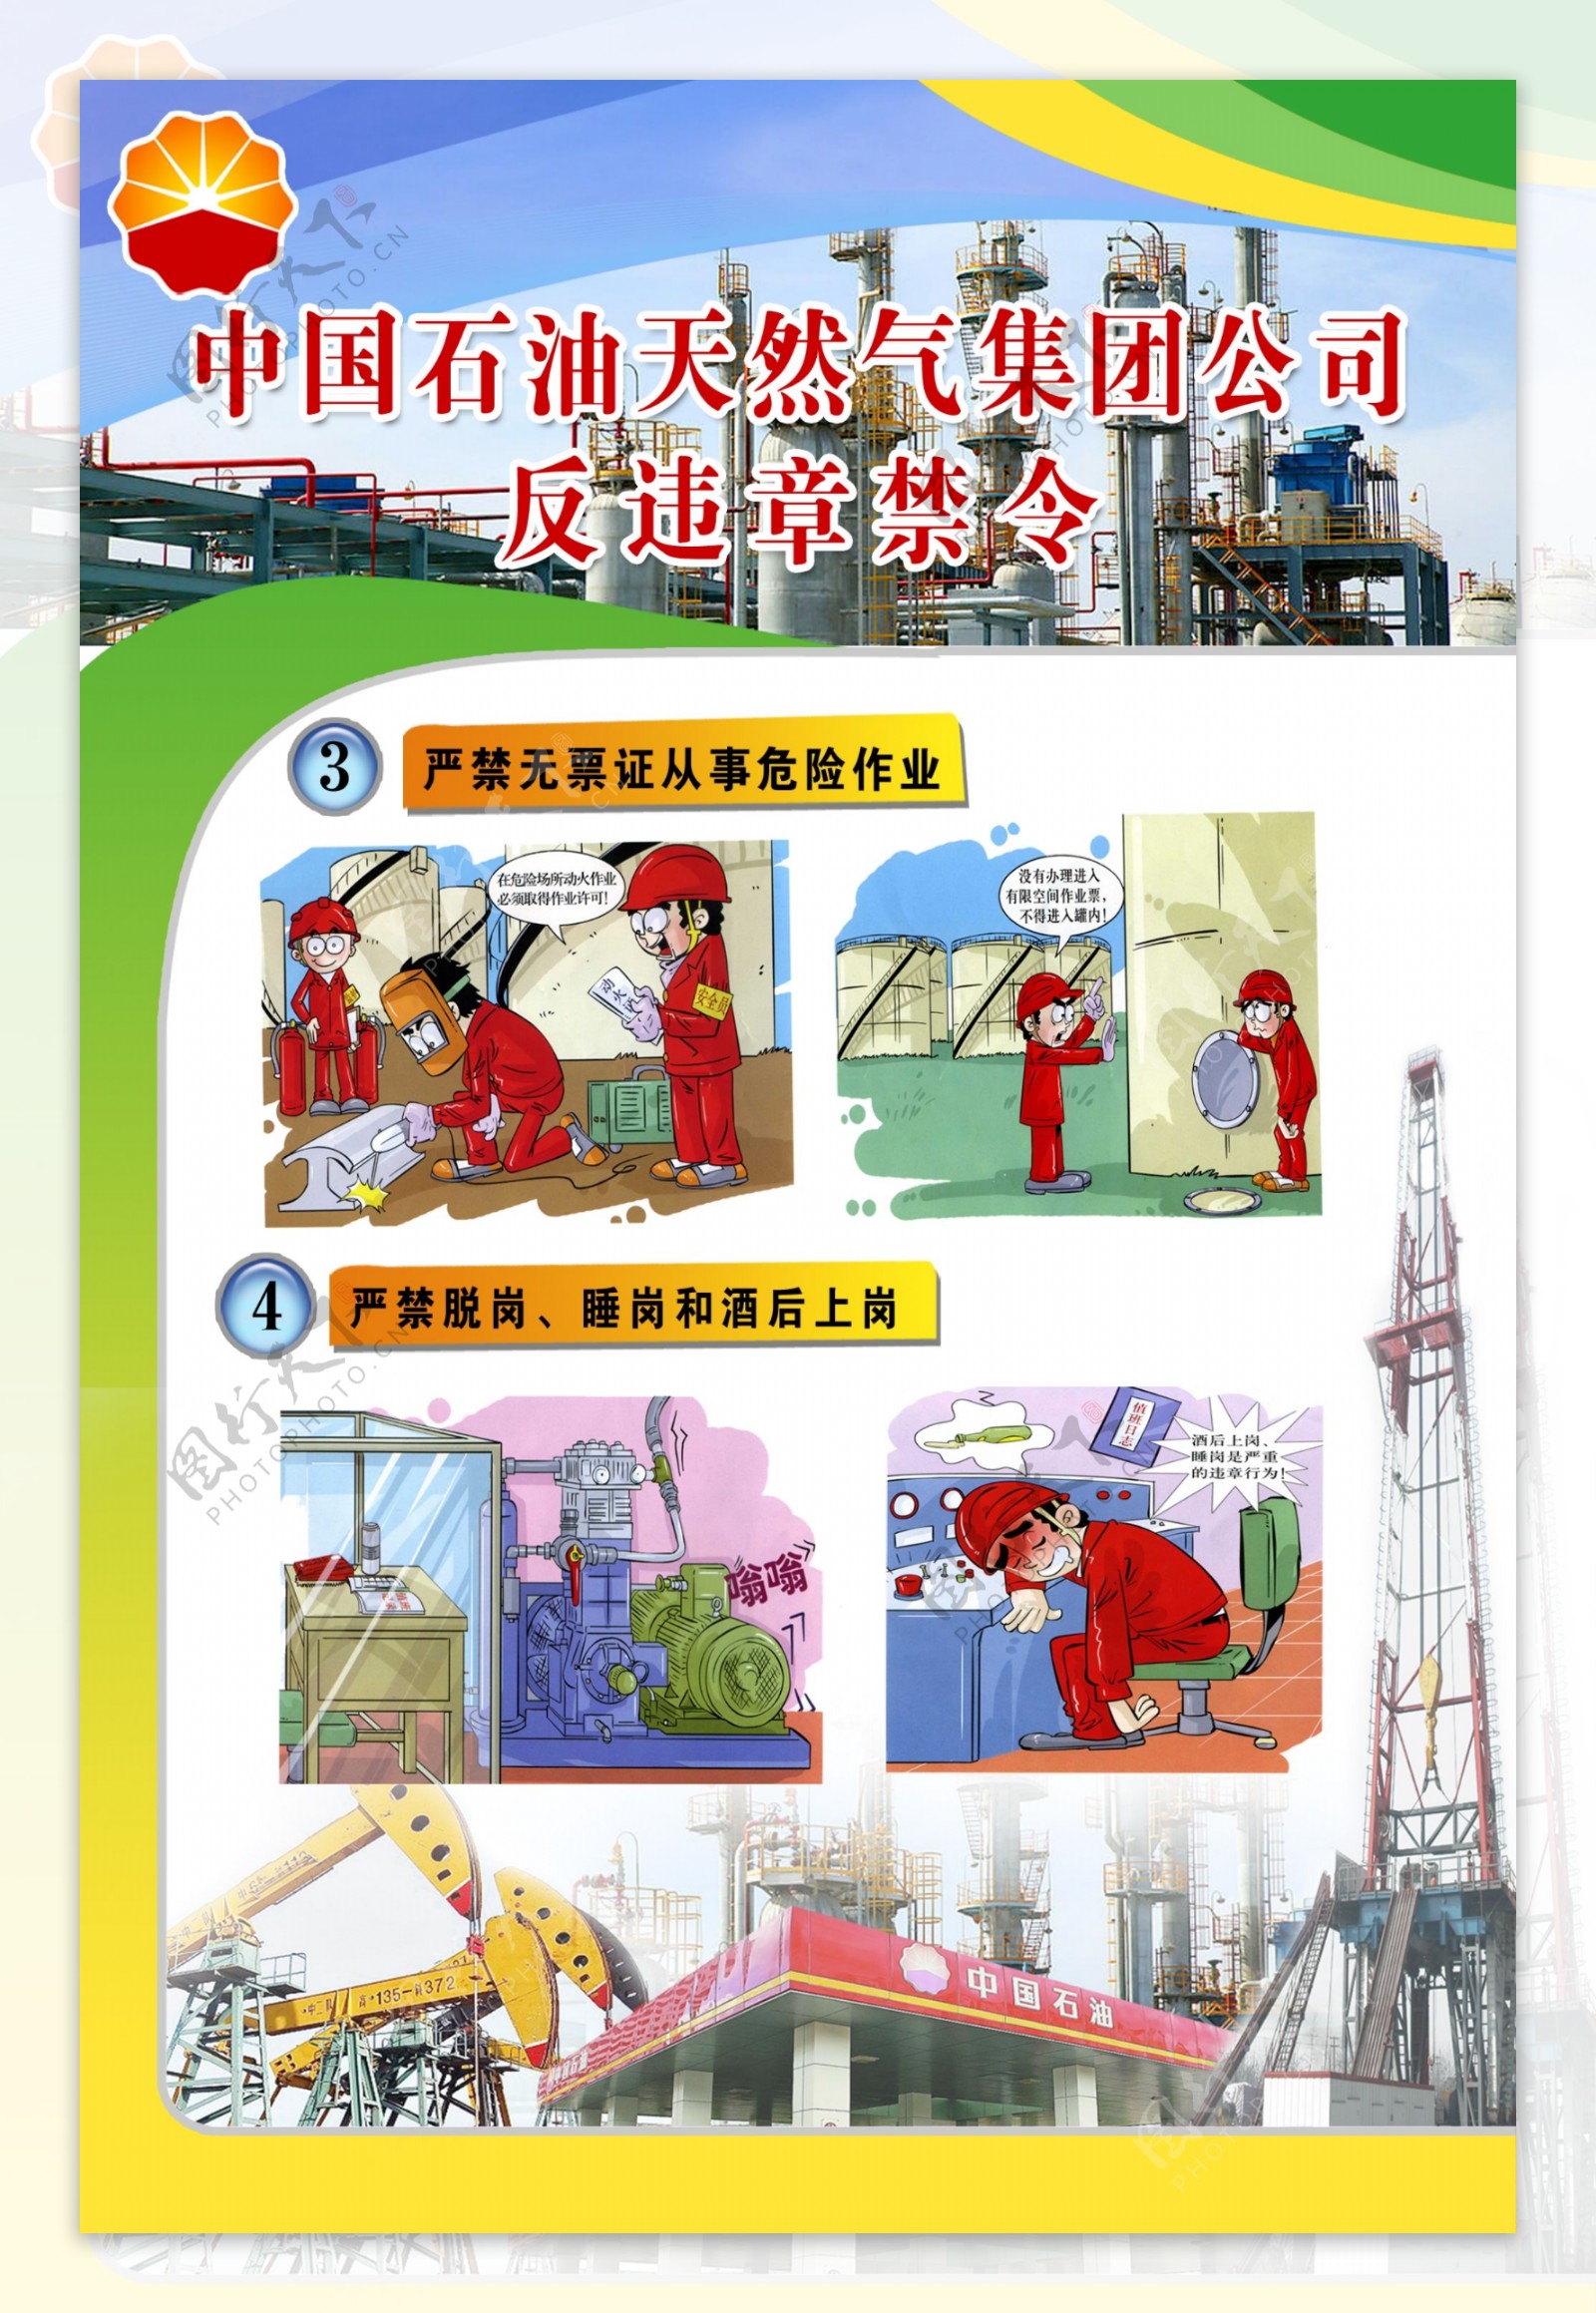 中国石油天然气集团公司反违章禁令